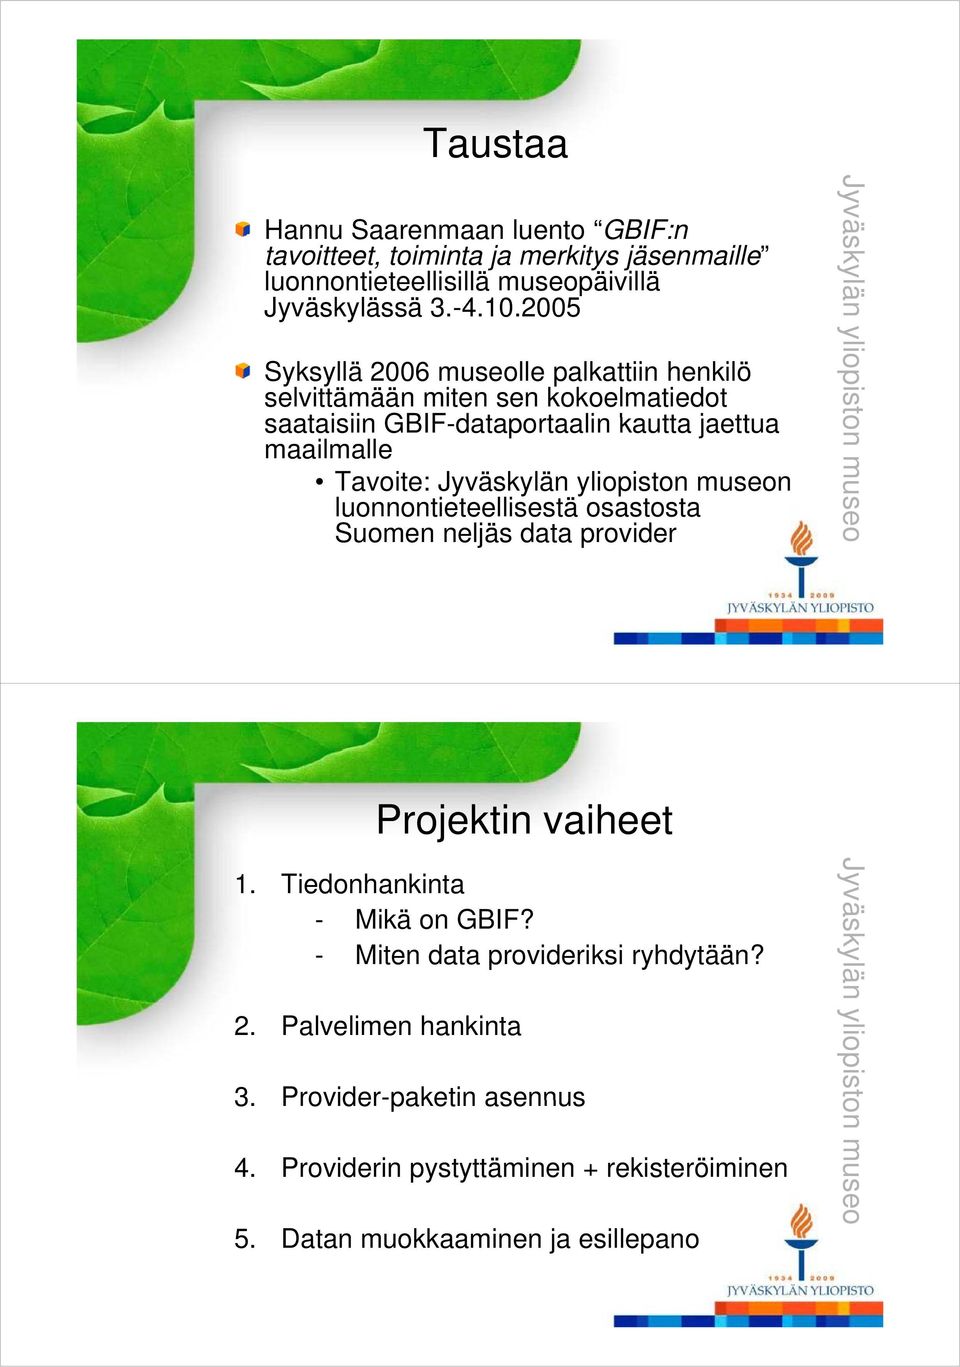 yliopiston museon luonnontieteellisestä osastosta Suomen neljäs data provider Jy yväsky ylän yl liopisto on mu useo Projektin vaiheet 1. Tiedonhankinta - - Mikä on GBIF?